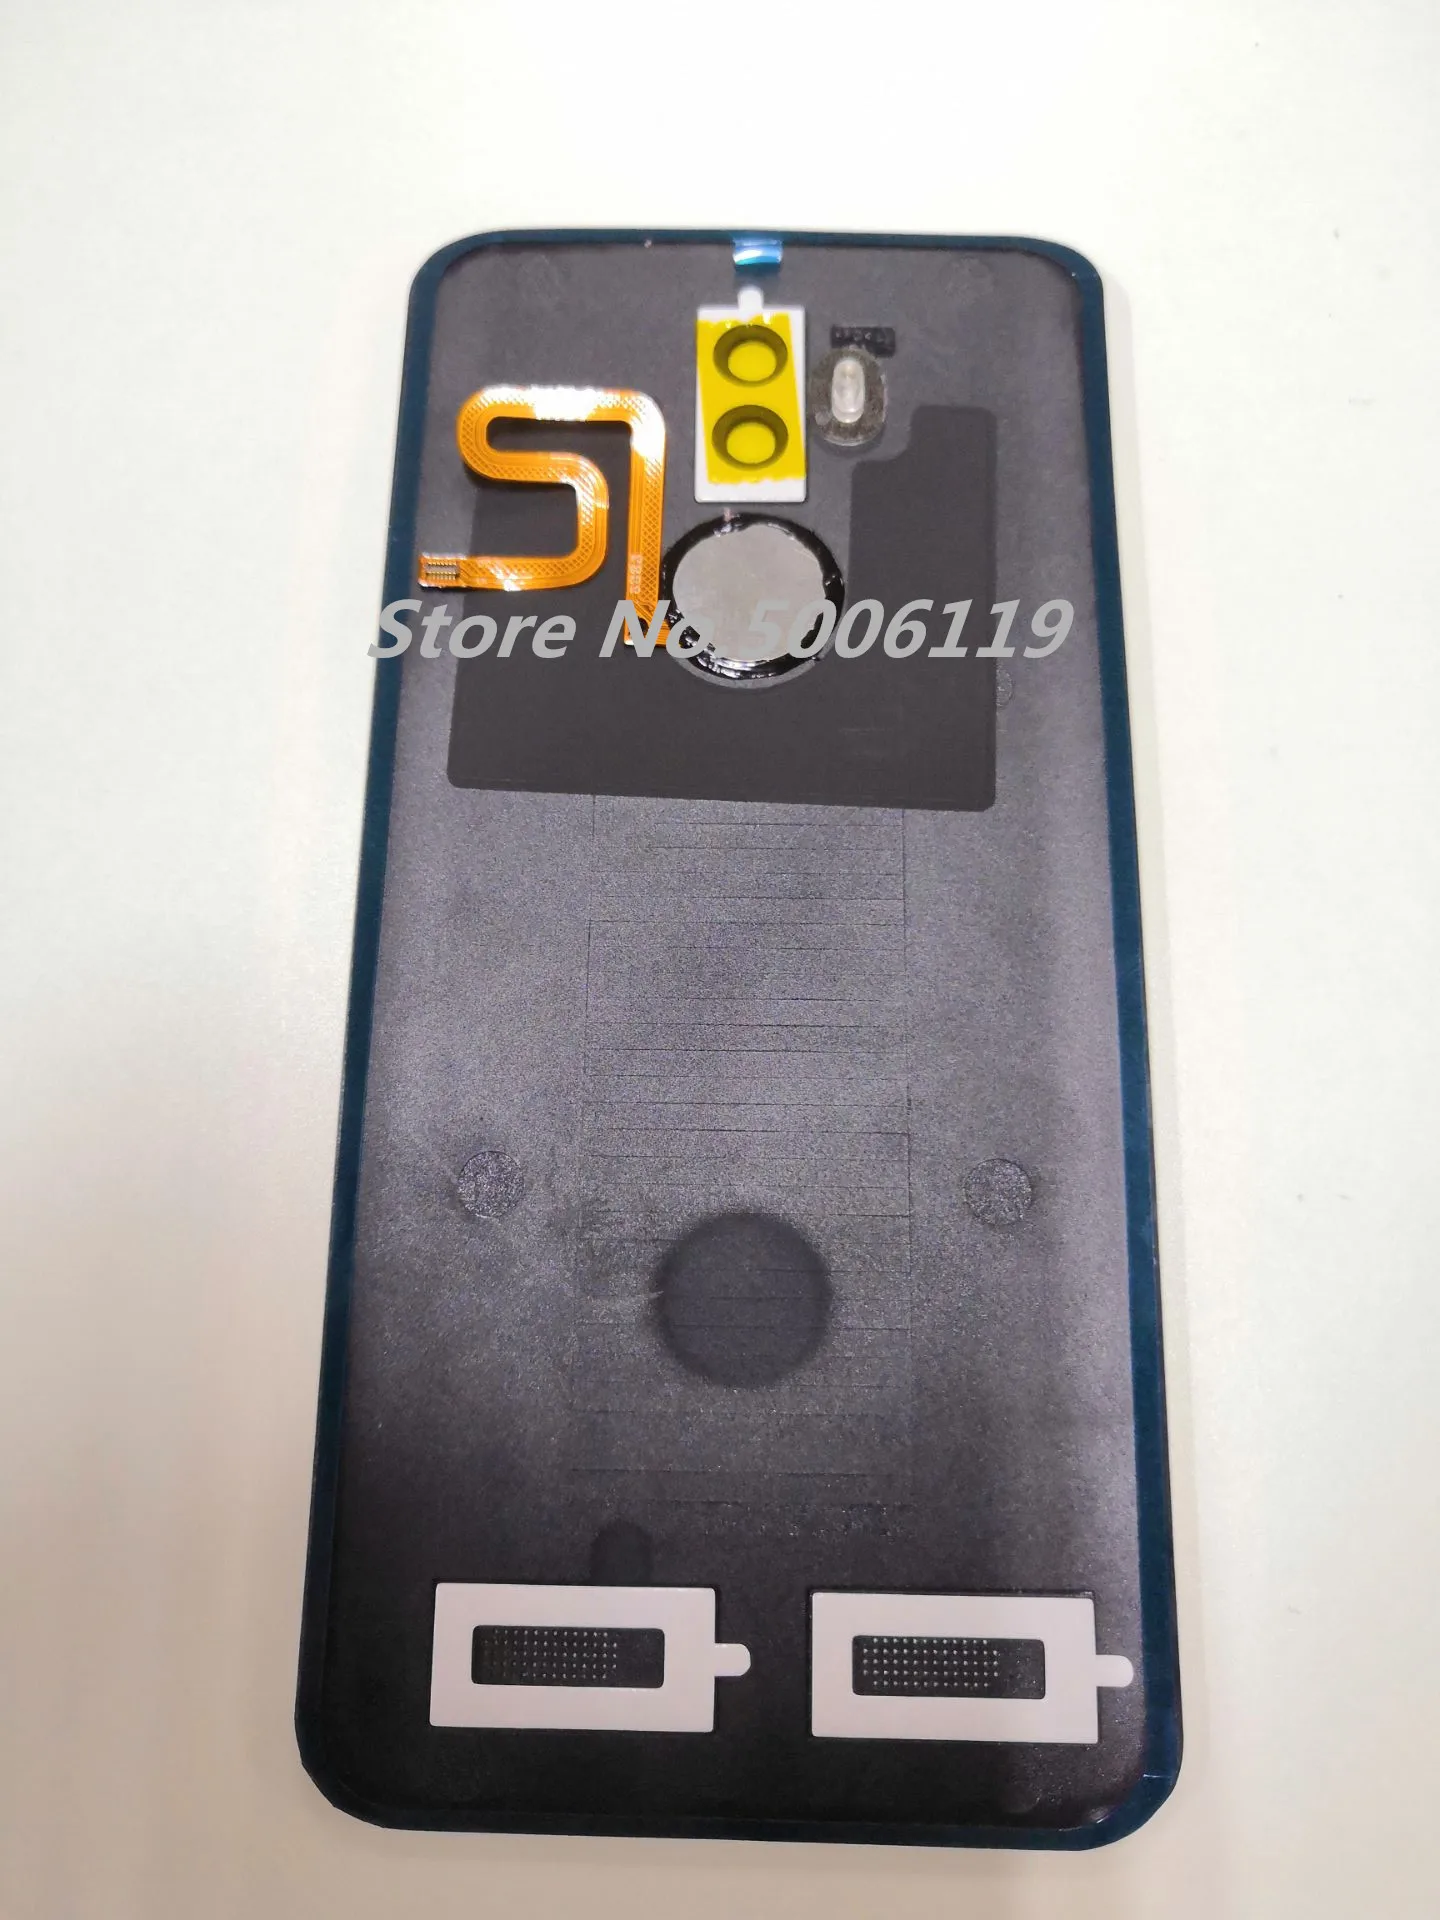 Чехол для AGM X3 5,99 ''IP68 для задней панели сотового телефона, чехол для док-станции с сенсором отпечатков пальцев и кнопкой объектива камеры